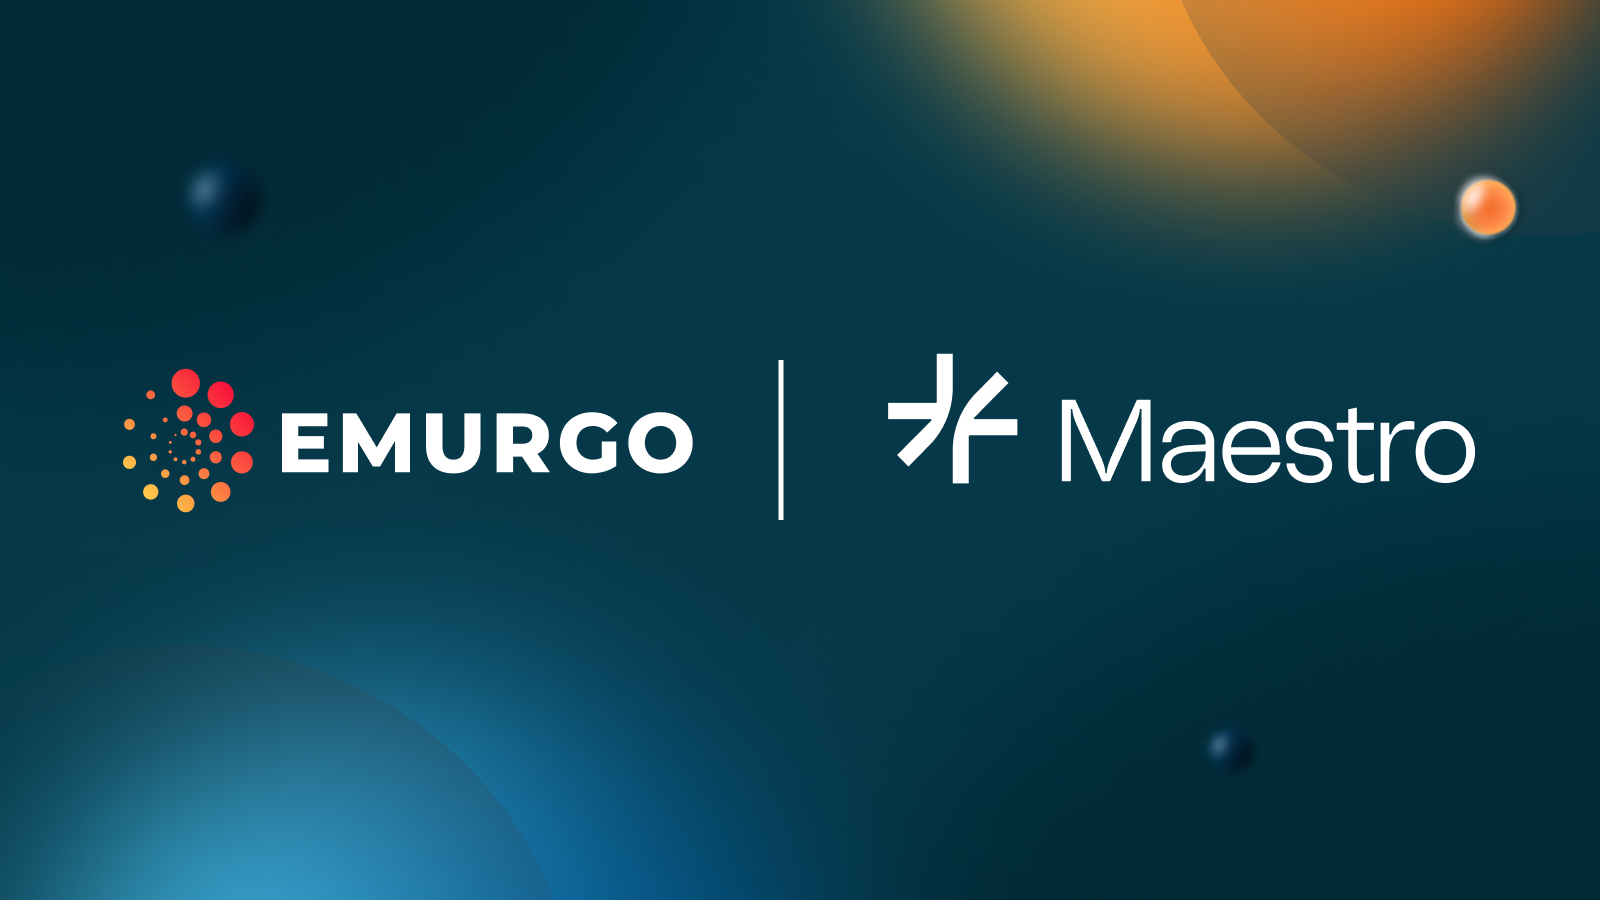 EMURGO Announces Additional Funding Round in Maestro